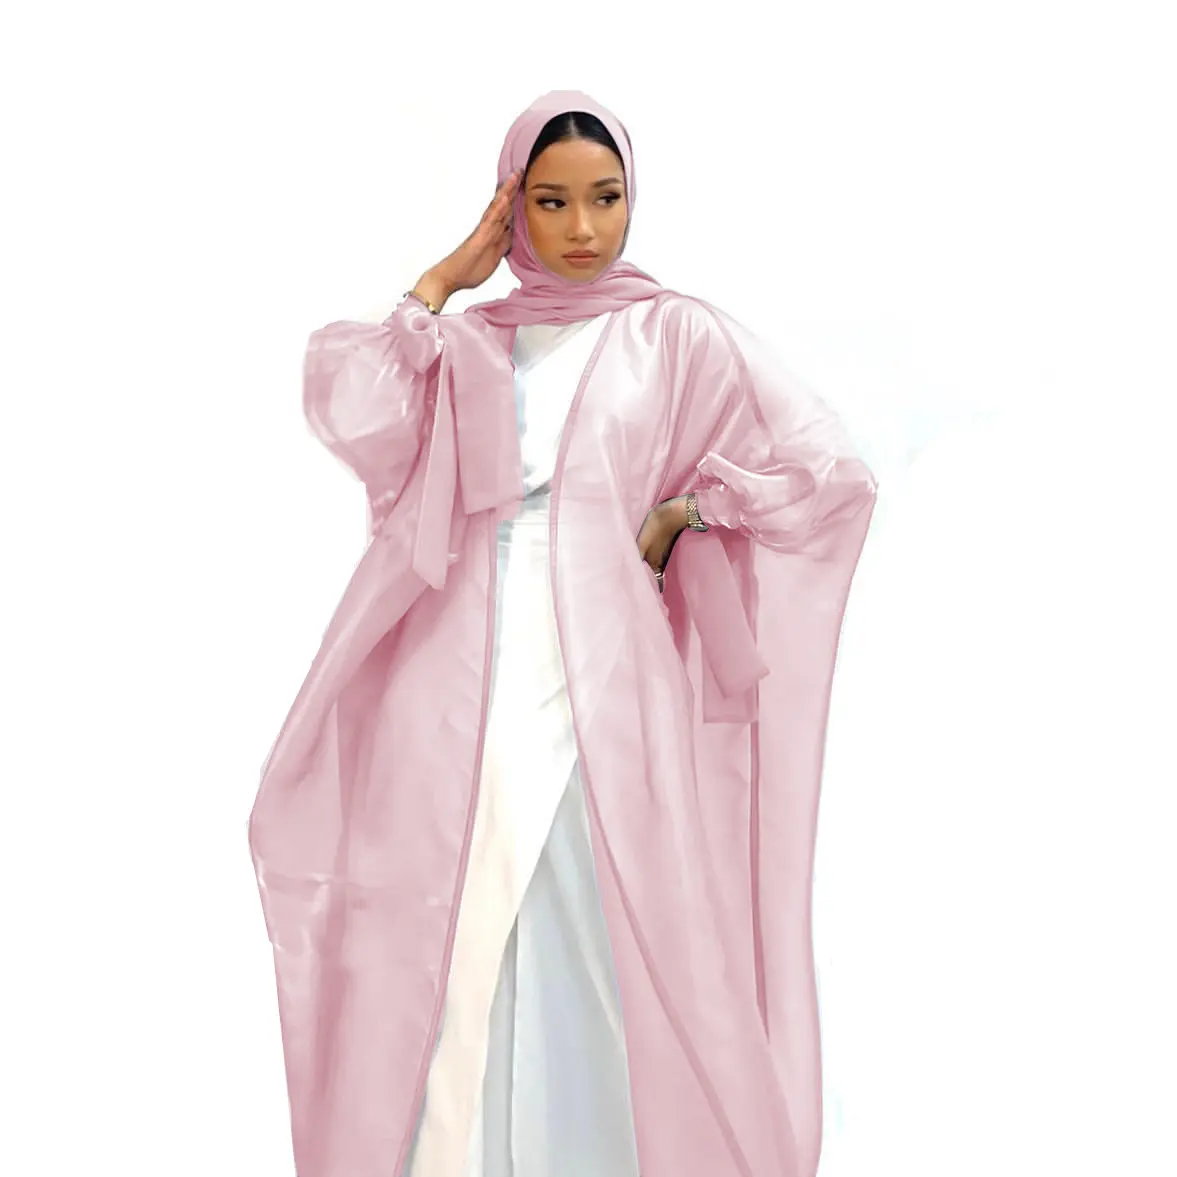 Abito Multi colore rosa bordeaux turkishi abbigliamento islamico Dubai Abaya abito musulmano Organza brillante poliestere aperto anteriore Abaya